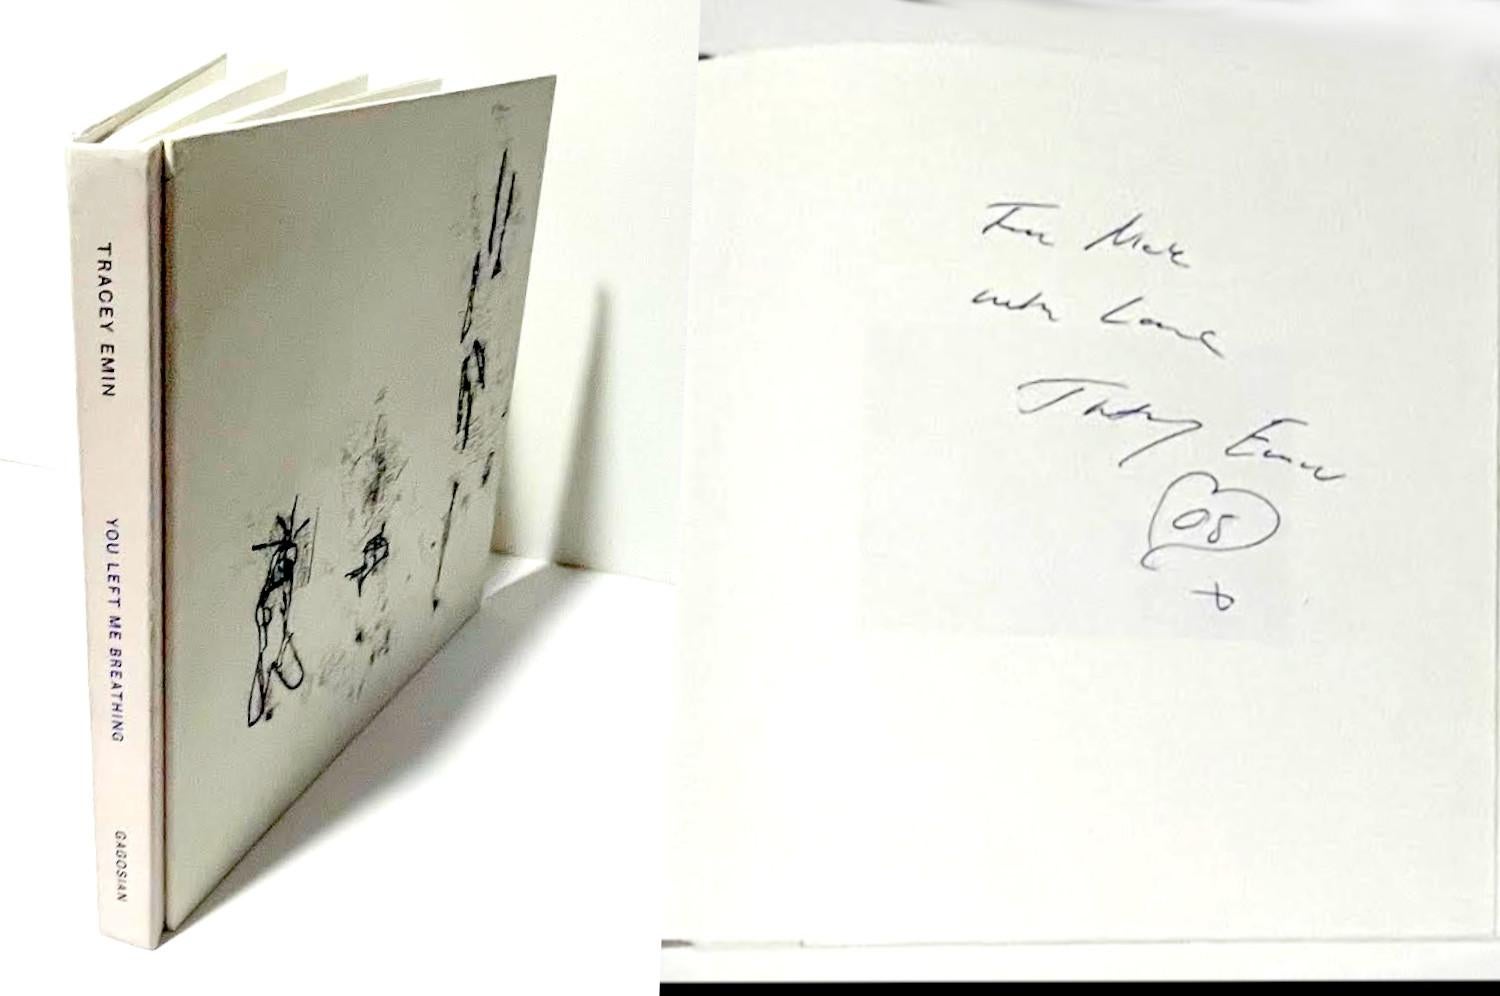 Tracey Emin
You Left Me Breathing (signé et inscrit avec un cœur dessiné à la main par Tracey Emin), 2008
Monographie reliée sans jaquette (signée et inscrite à la main par Tracey Emin avec une fleur de cœur dessinée à la main).
Chaleureusement